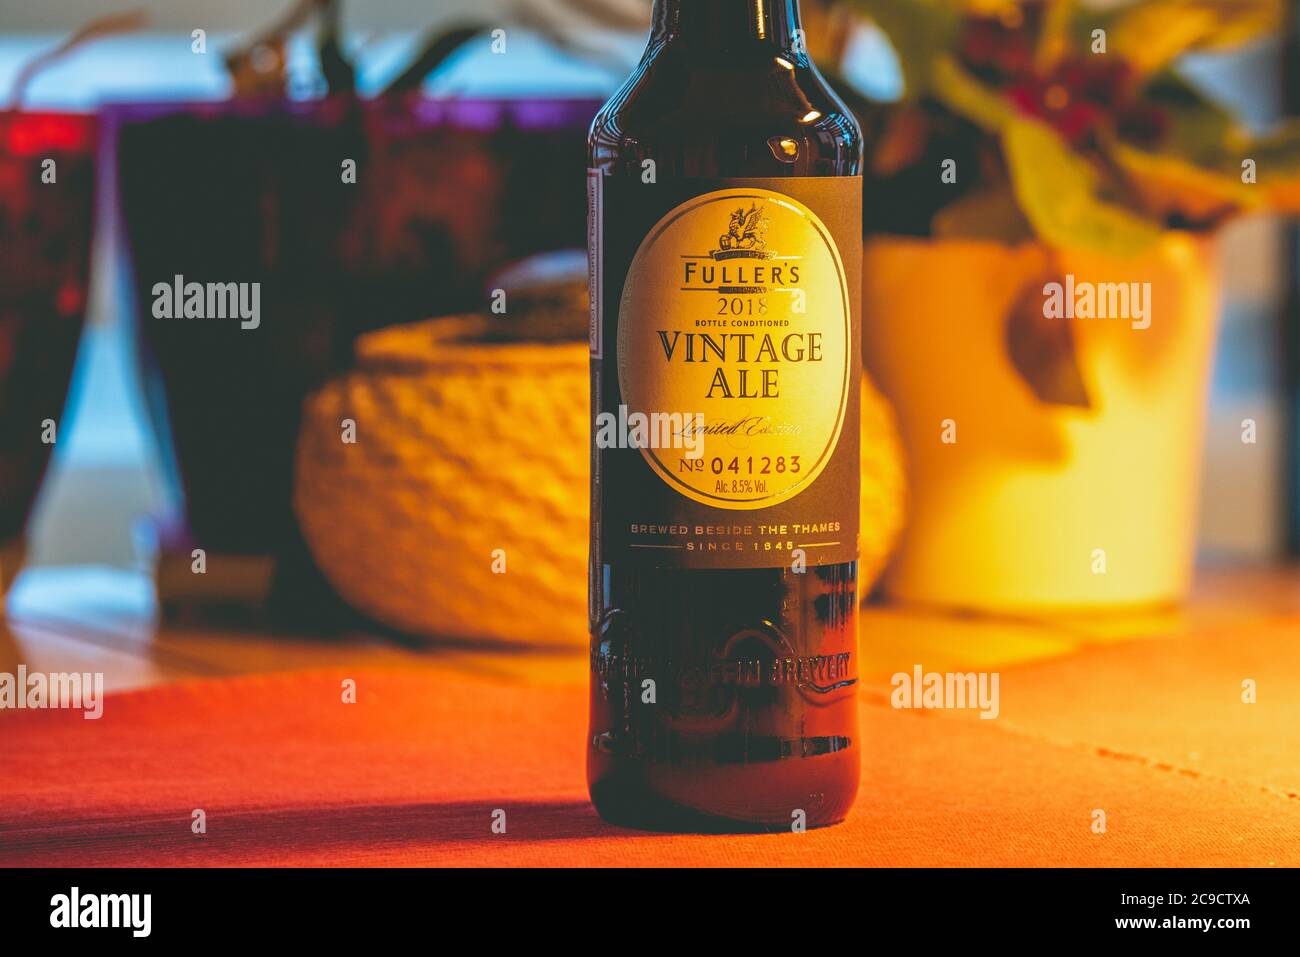 Ankara, TÜRKEI - 1. Januar 2020: Ein besonderes Bier von einer der bekanntesten britischen Brauereien, Fuller's Vintage Ale, wird auf der ganzen Welt gesät. Stockfoto